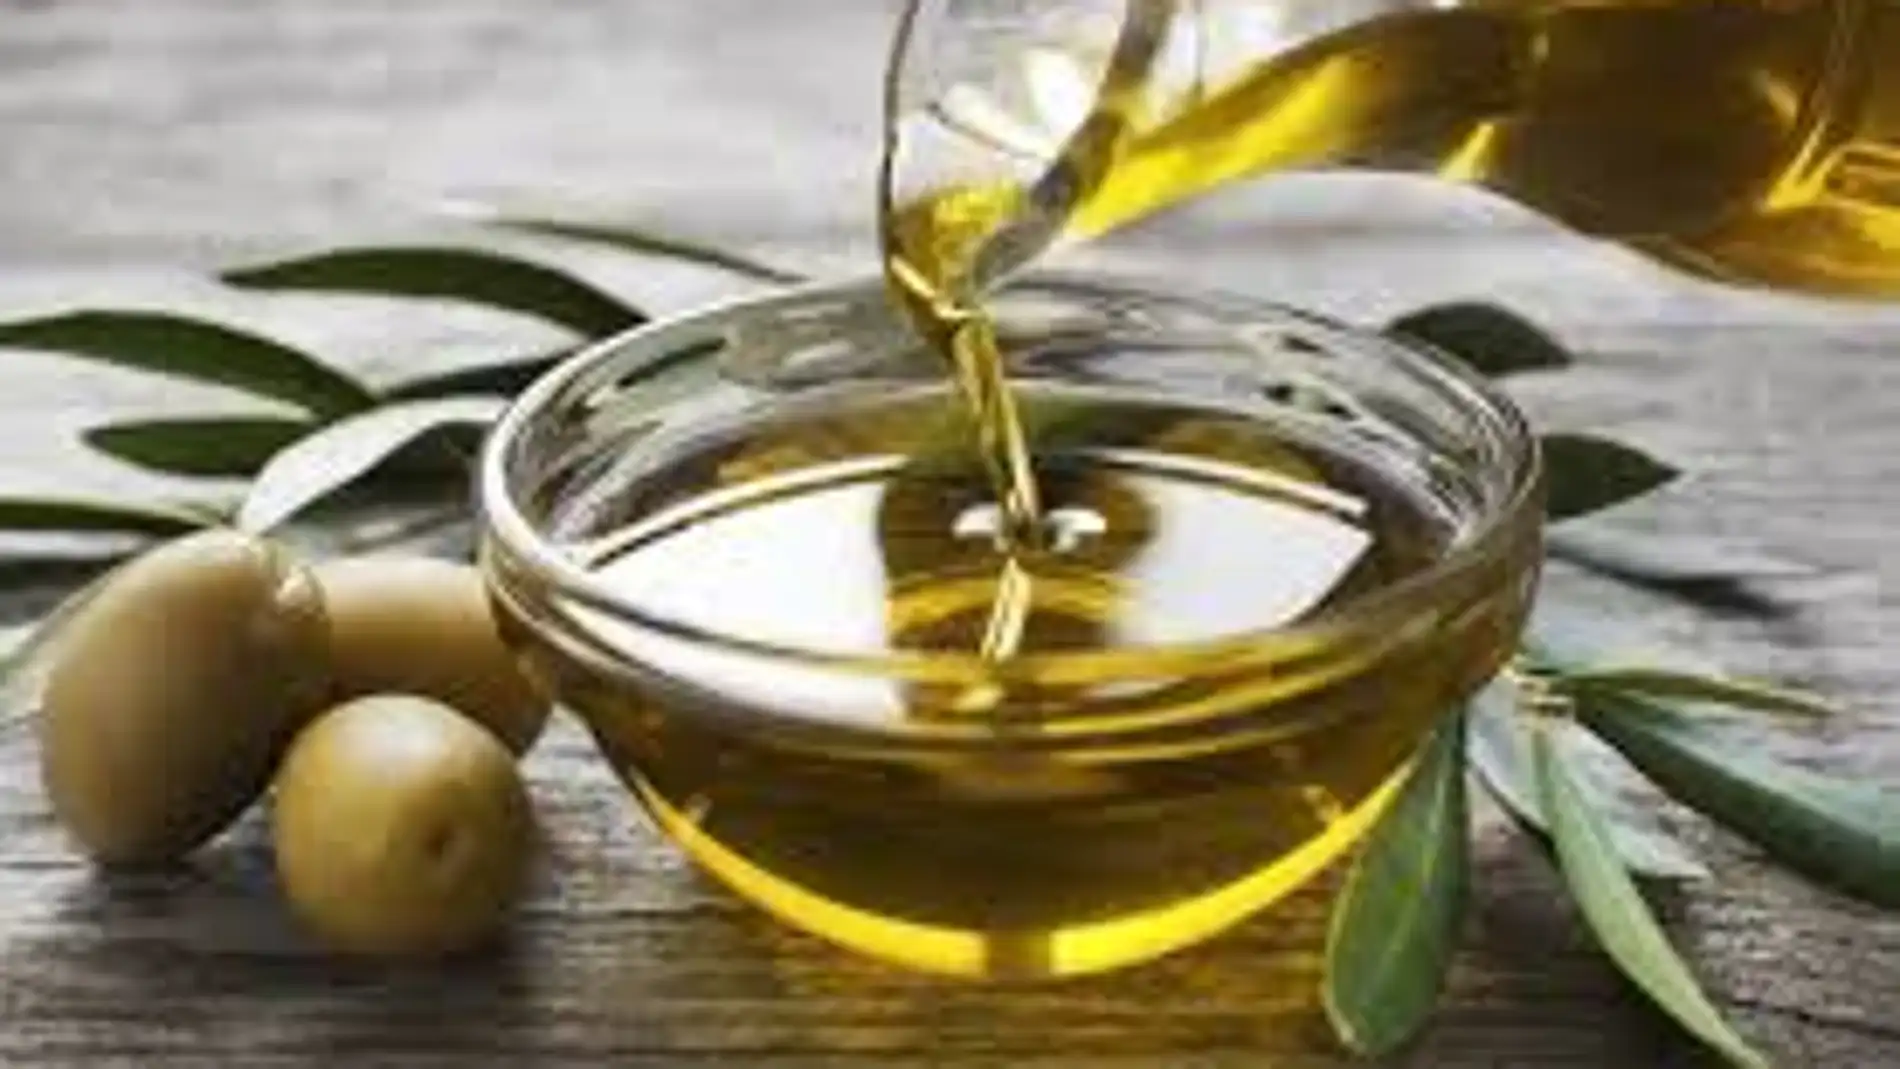 El coste de producción del aceite de oliva se triplica en tres años